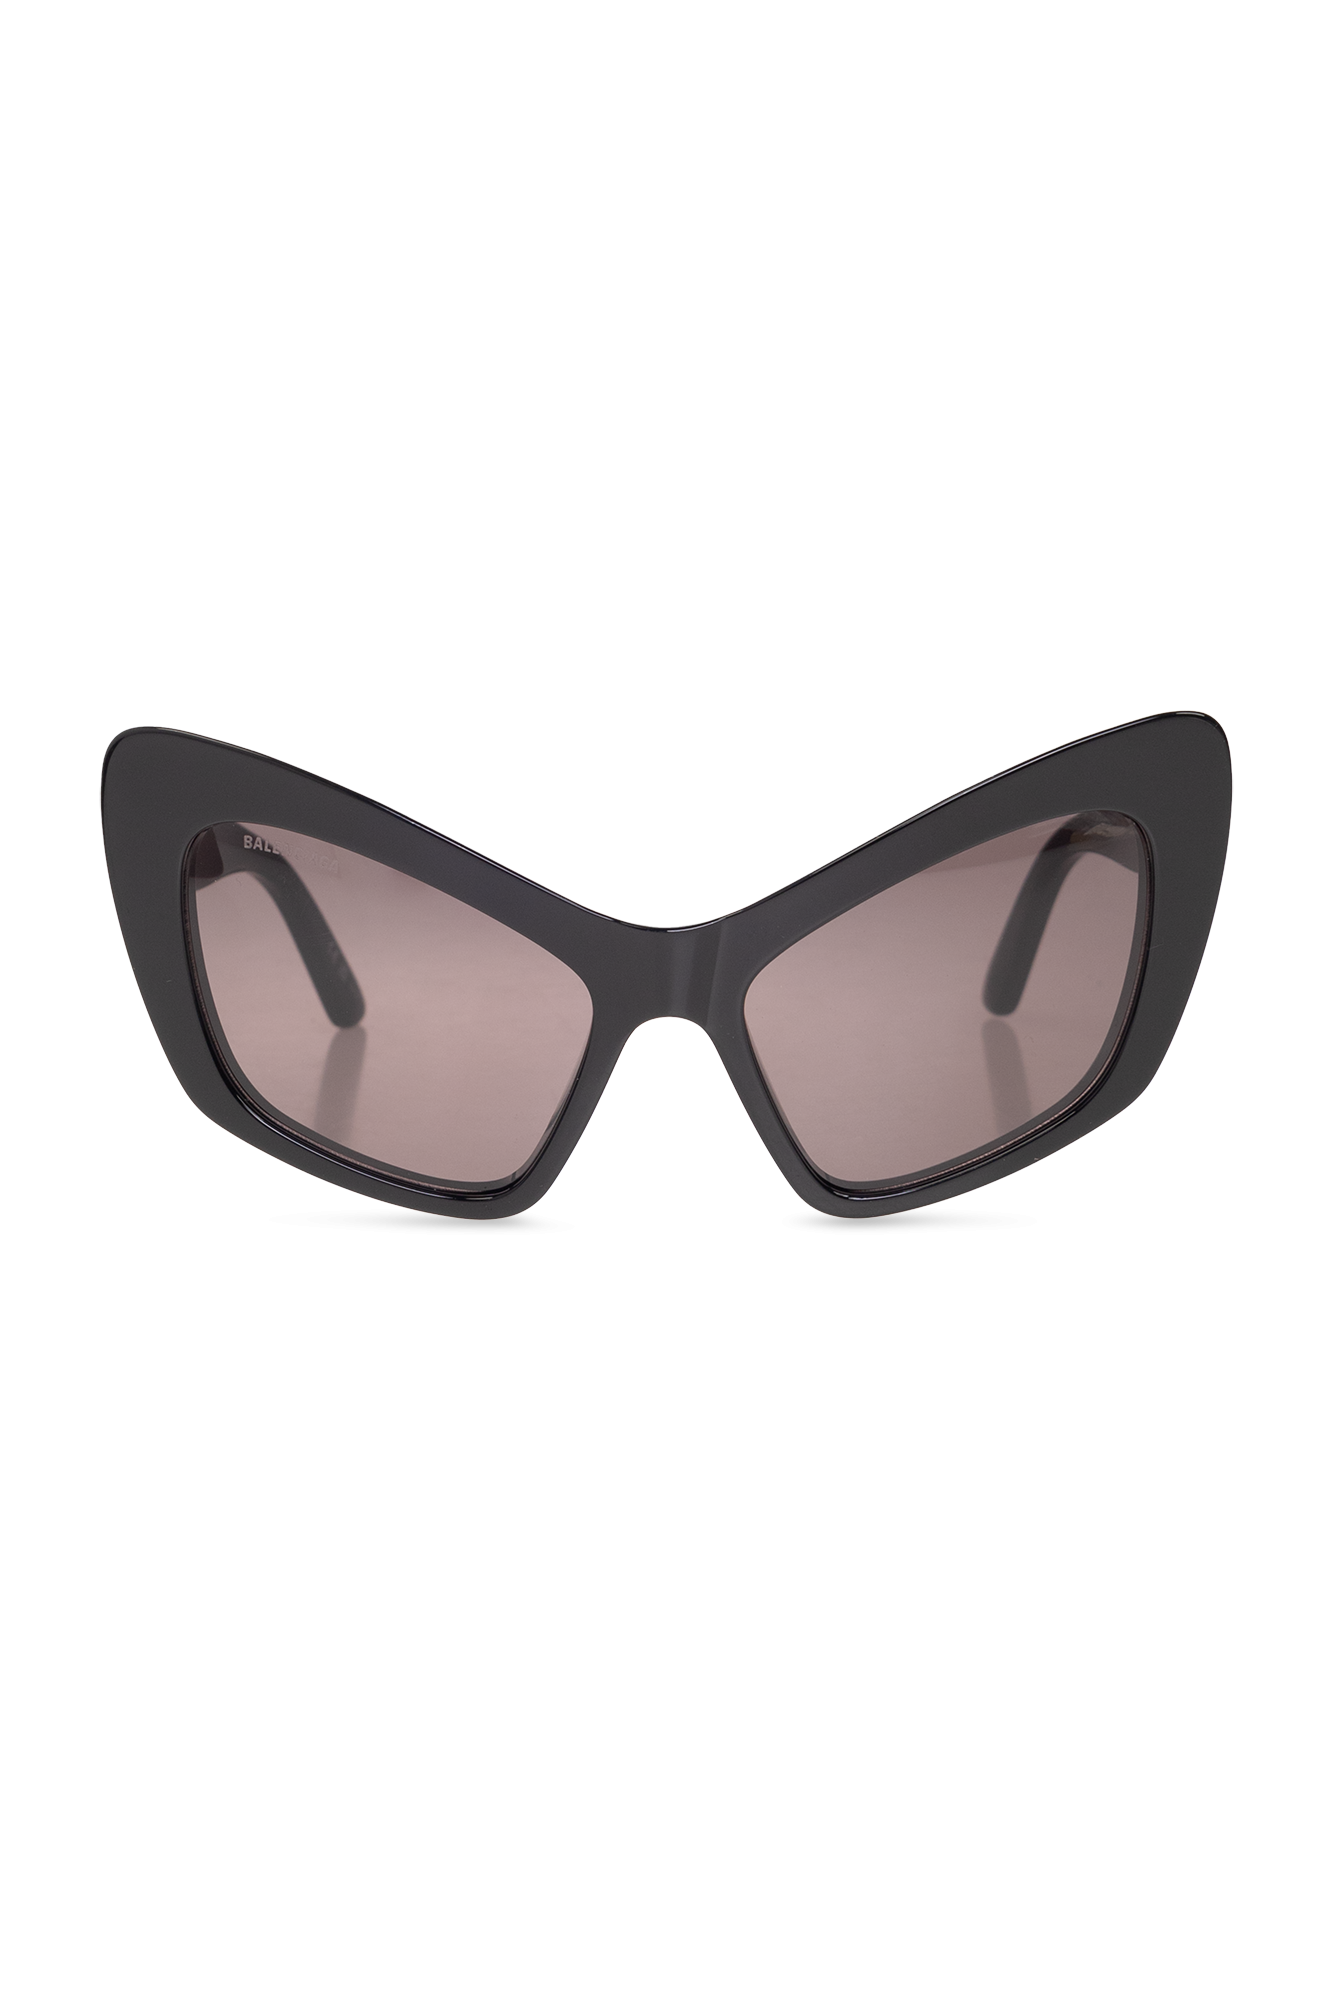 Balenciaga ‘Monaco Cat’ sunglasses